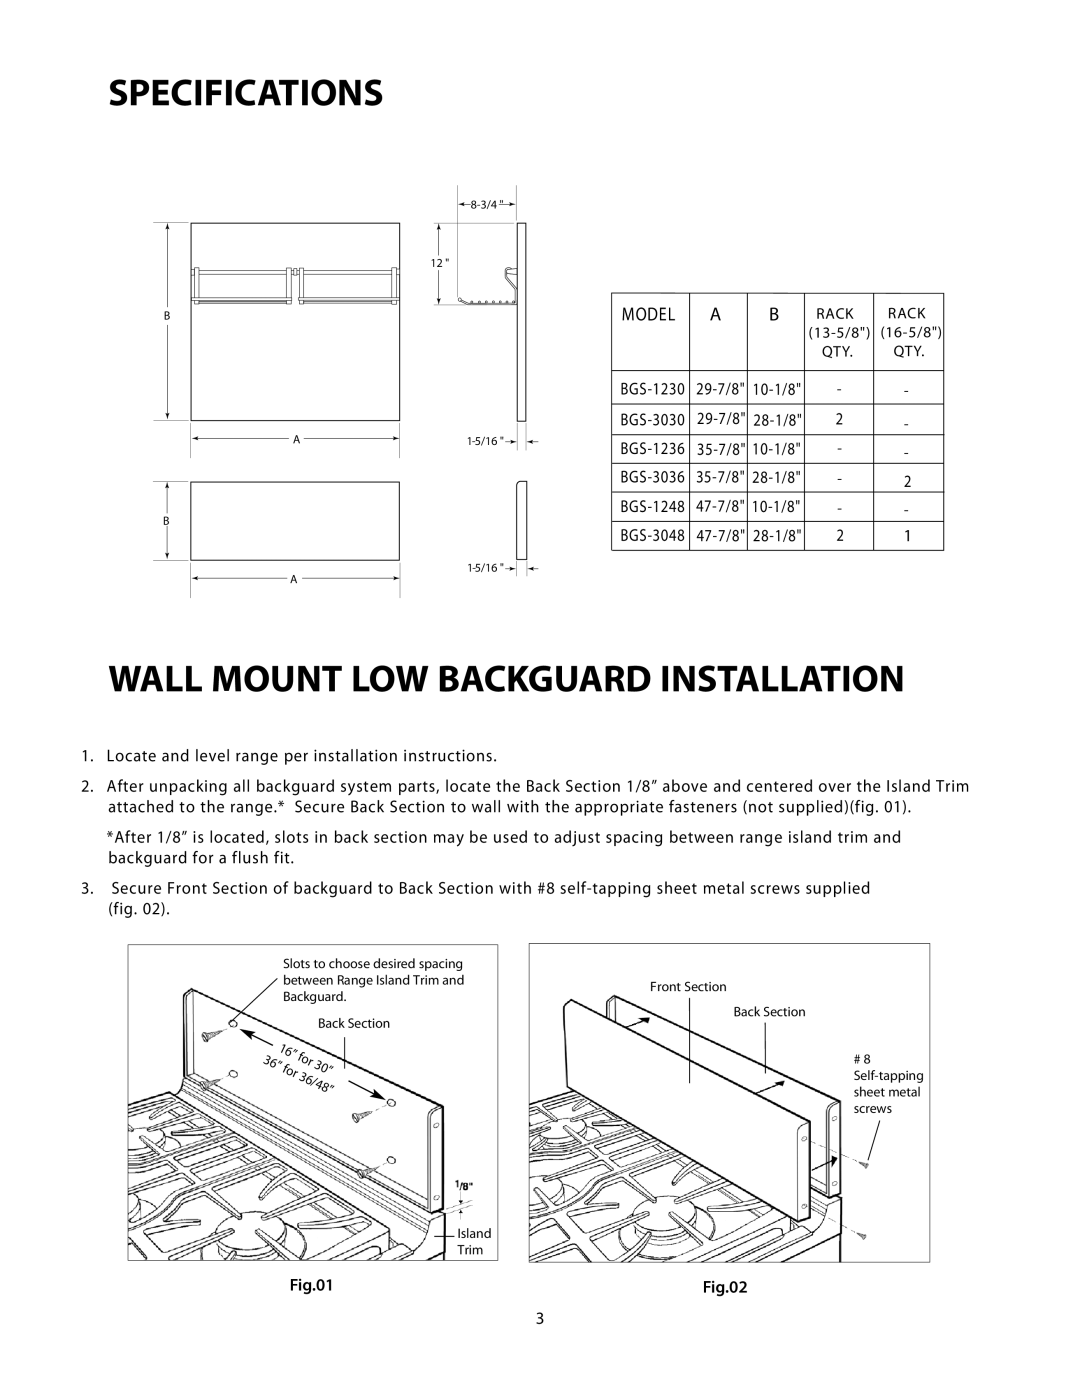 DCS BGS-1248, BGS-3030, BGS-3048, BGS-3036, BGS-1230, BGS-1236 Specifications, Wall Mount Low Backguard Installation, Model 